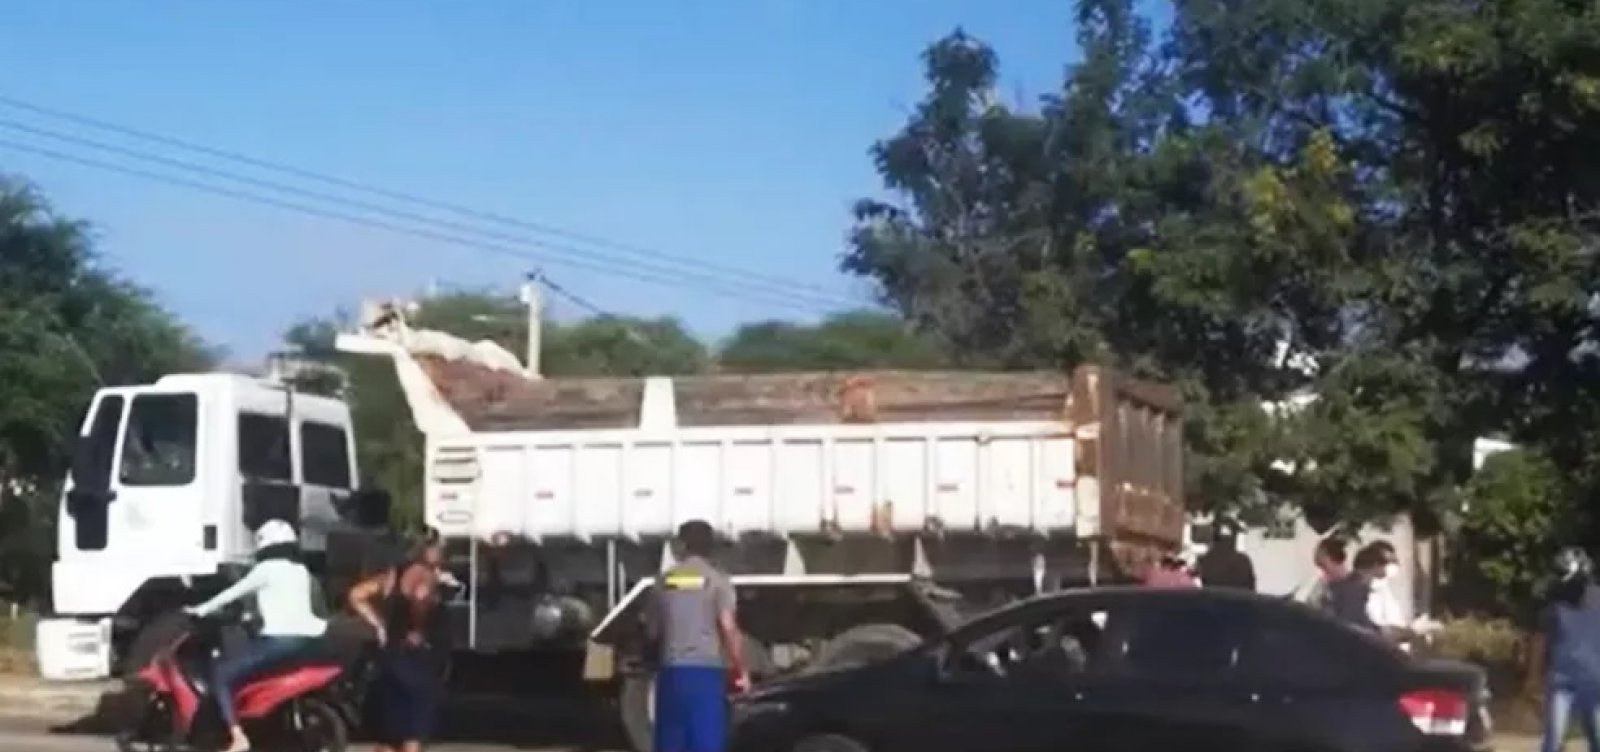 Jovem perde controle de motocicleta e morre ao parar embaixo de caminhão em Jequié  